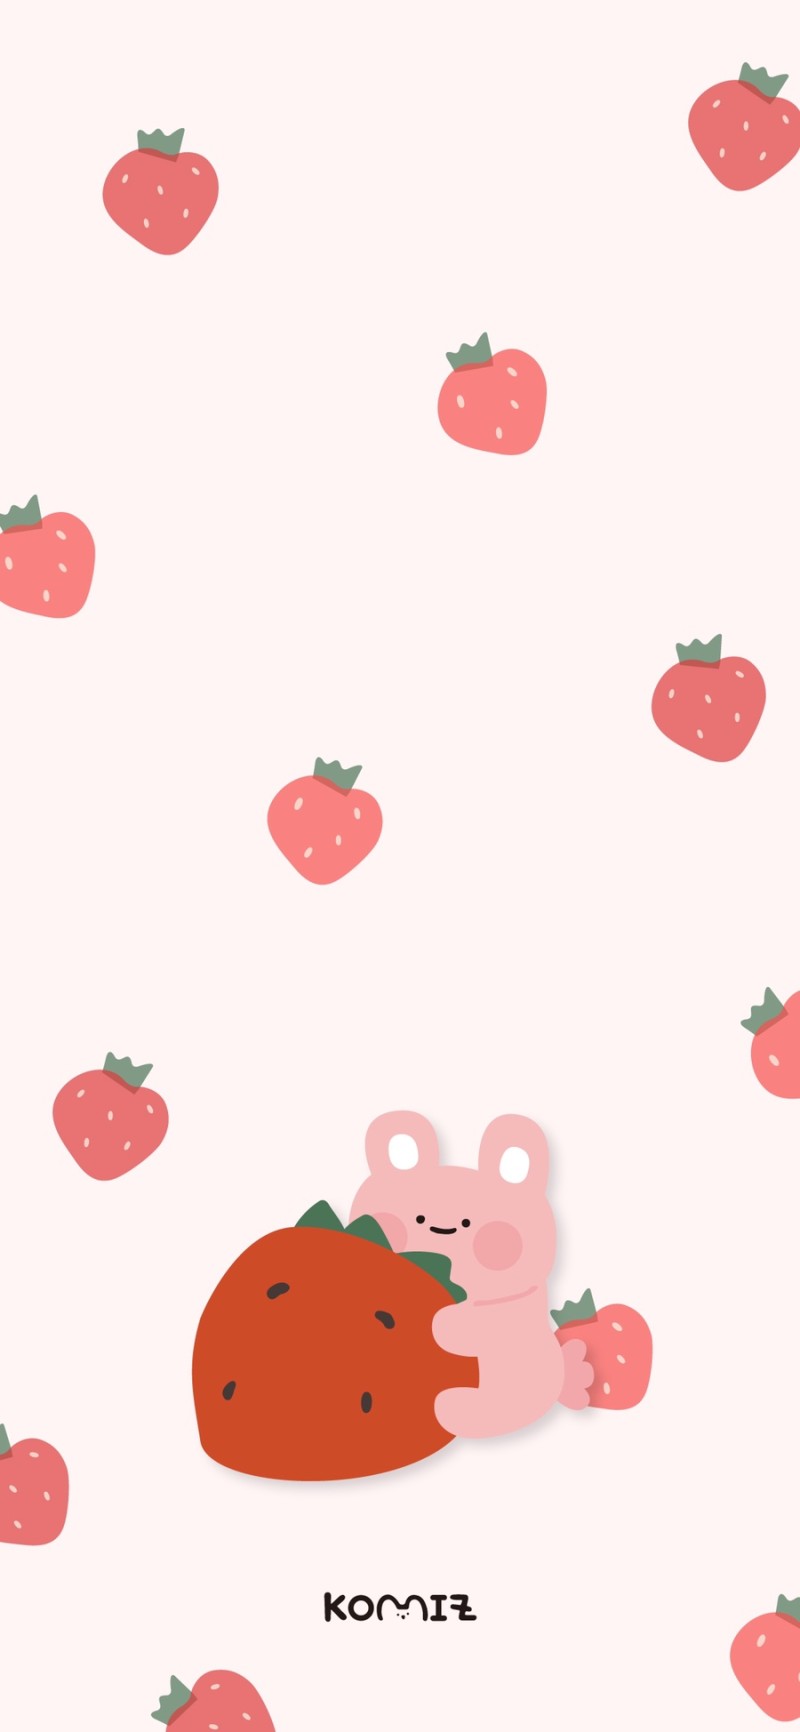 귀여운 딸기 배경화면 다운로드? : 네이버 블로그